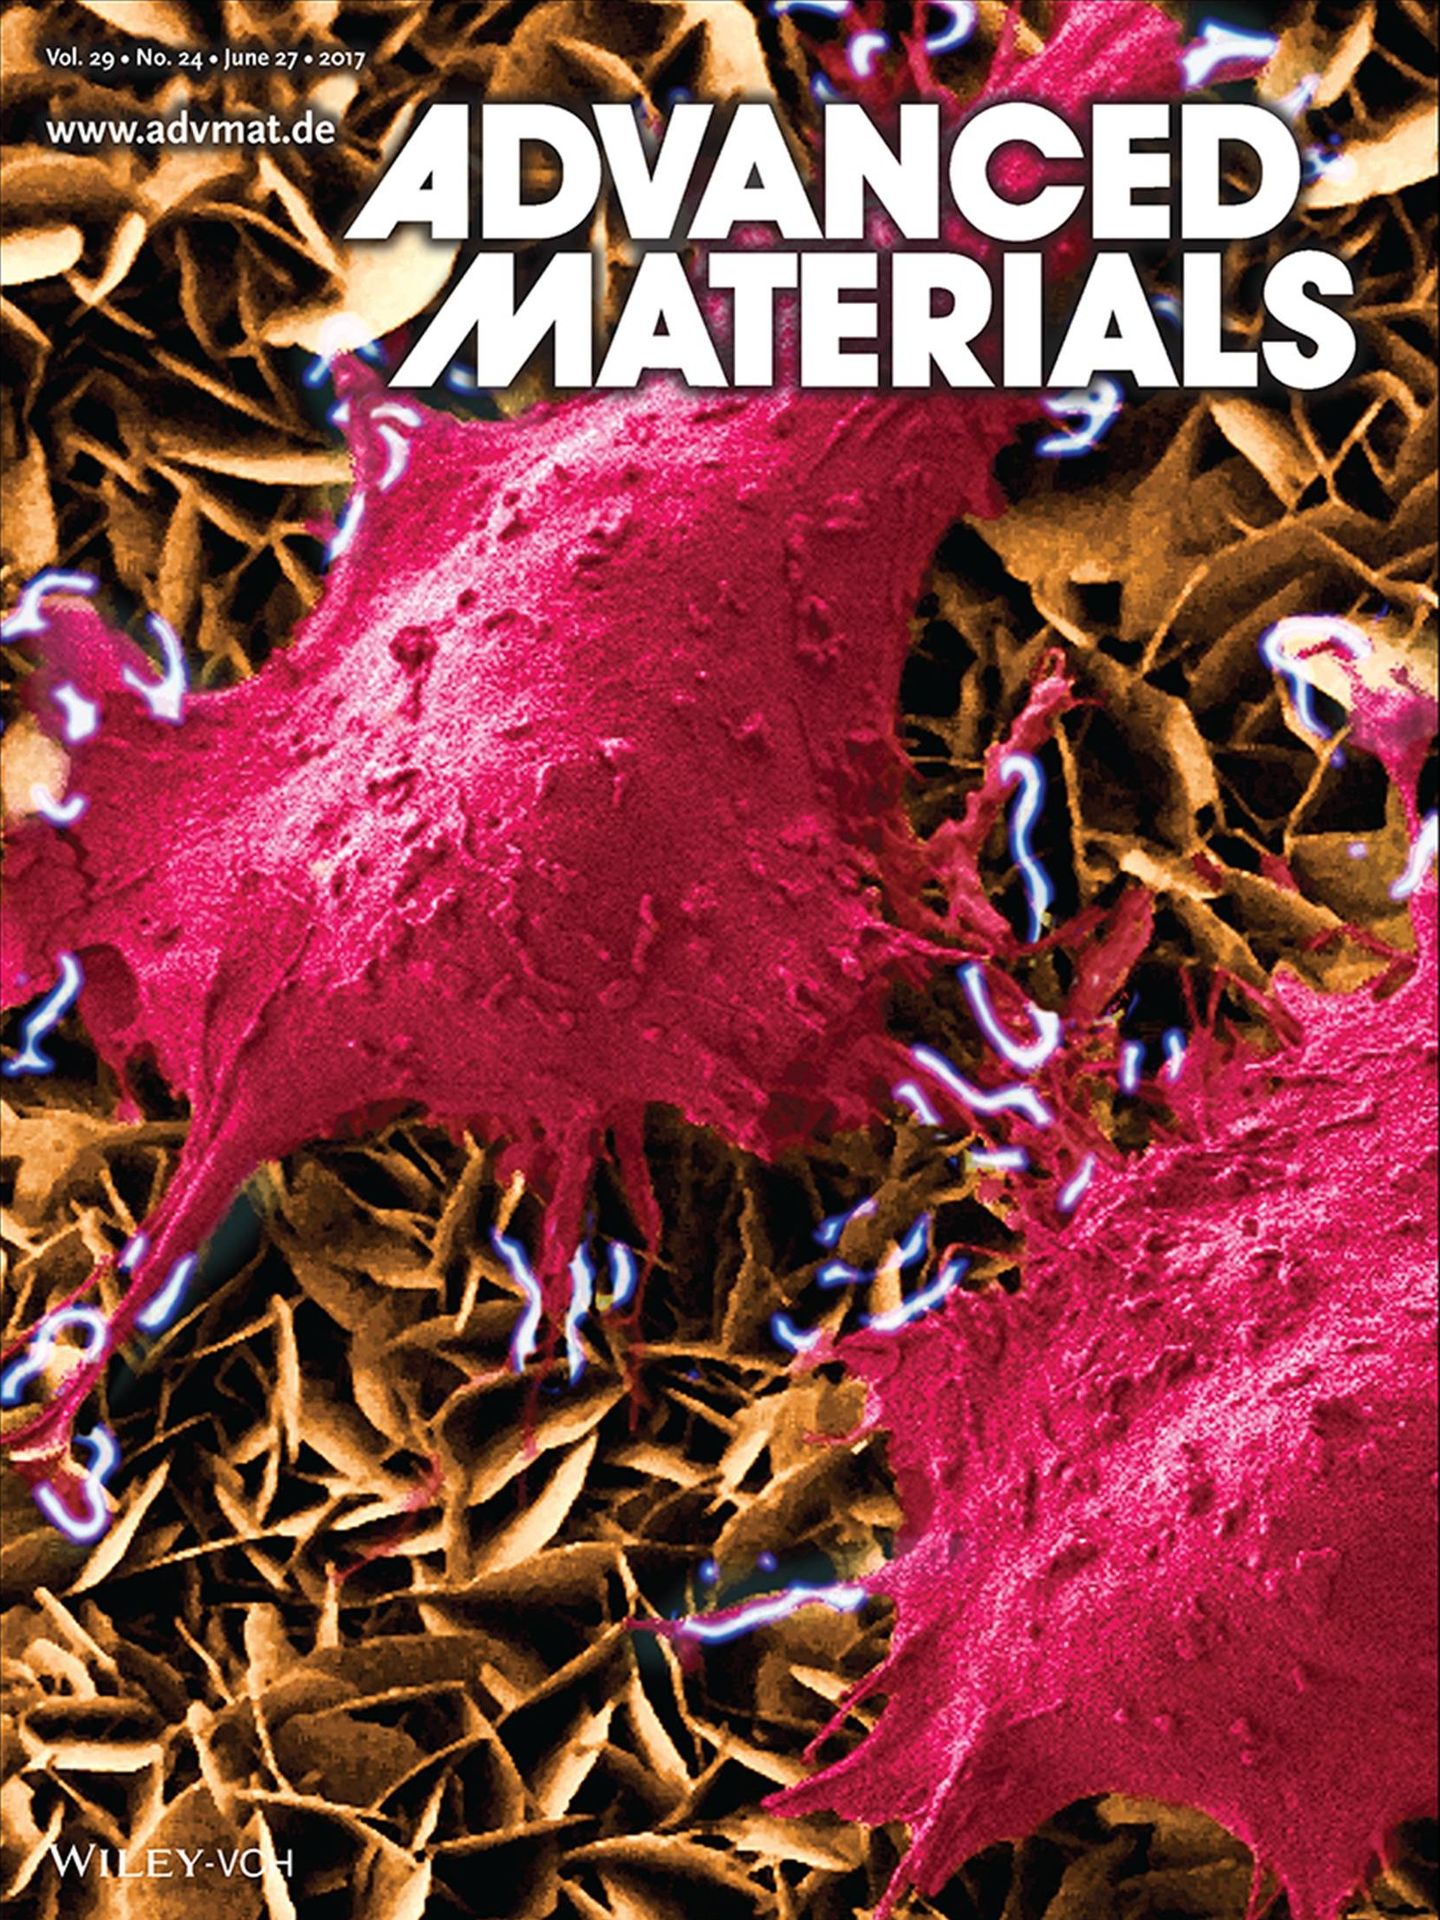 Una ilustración del invento de Murillo en la portada de la revista Advanced Materials